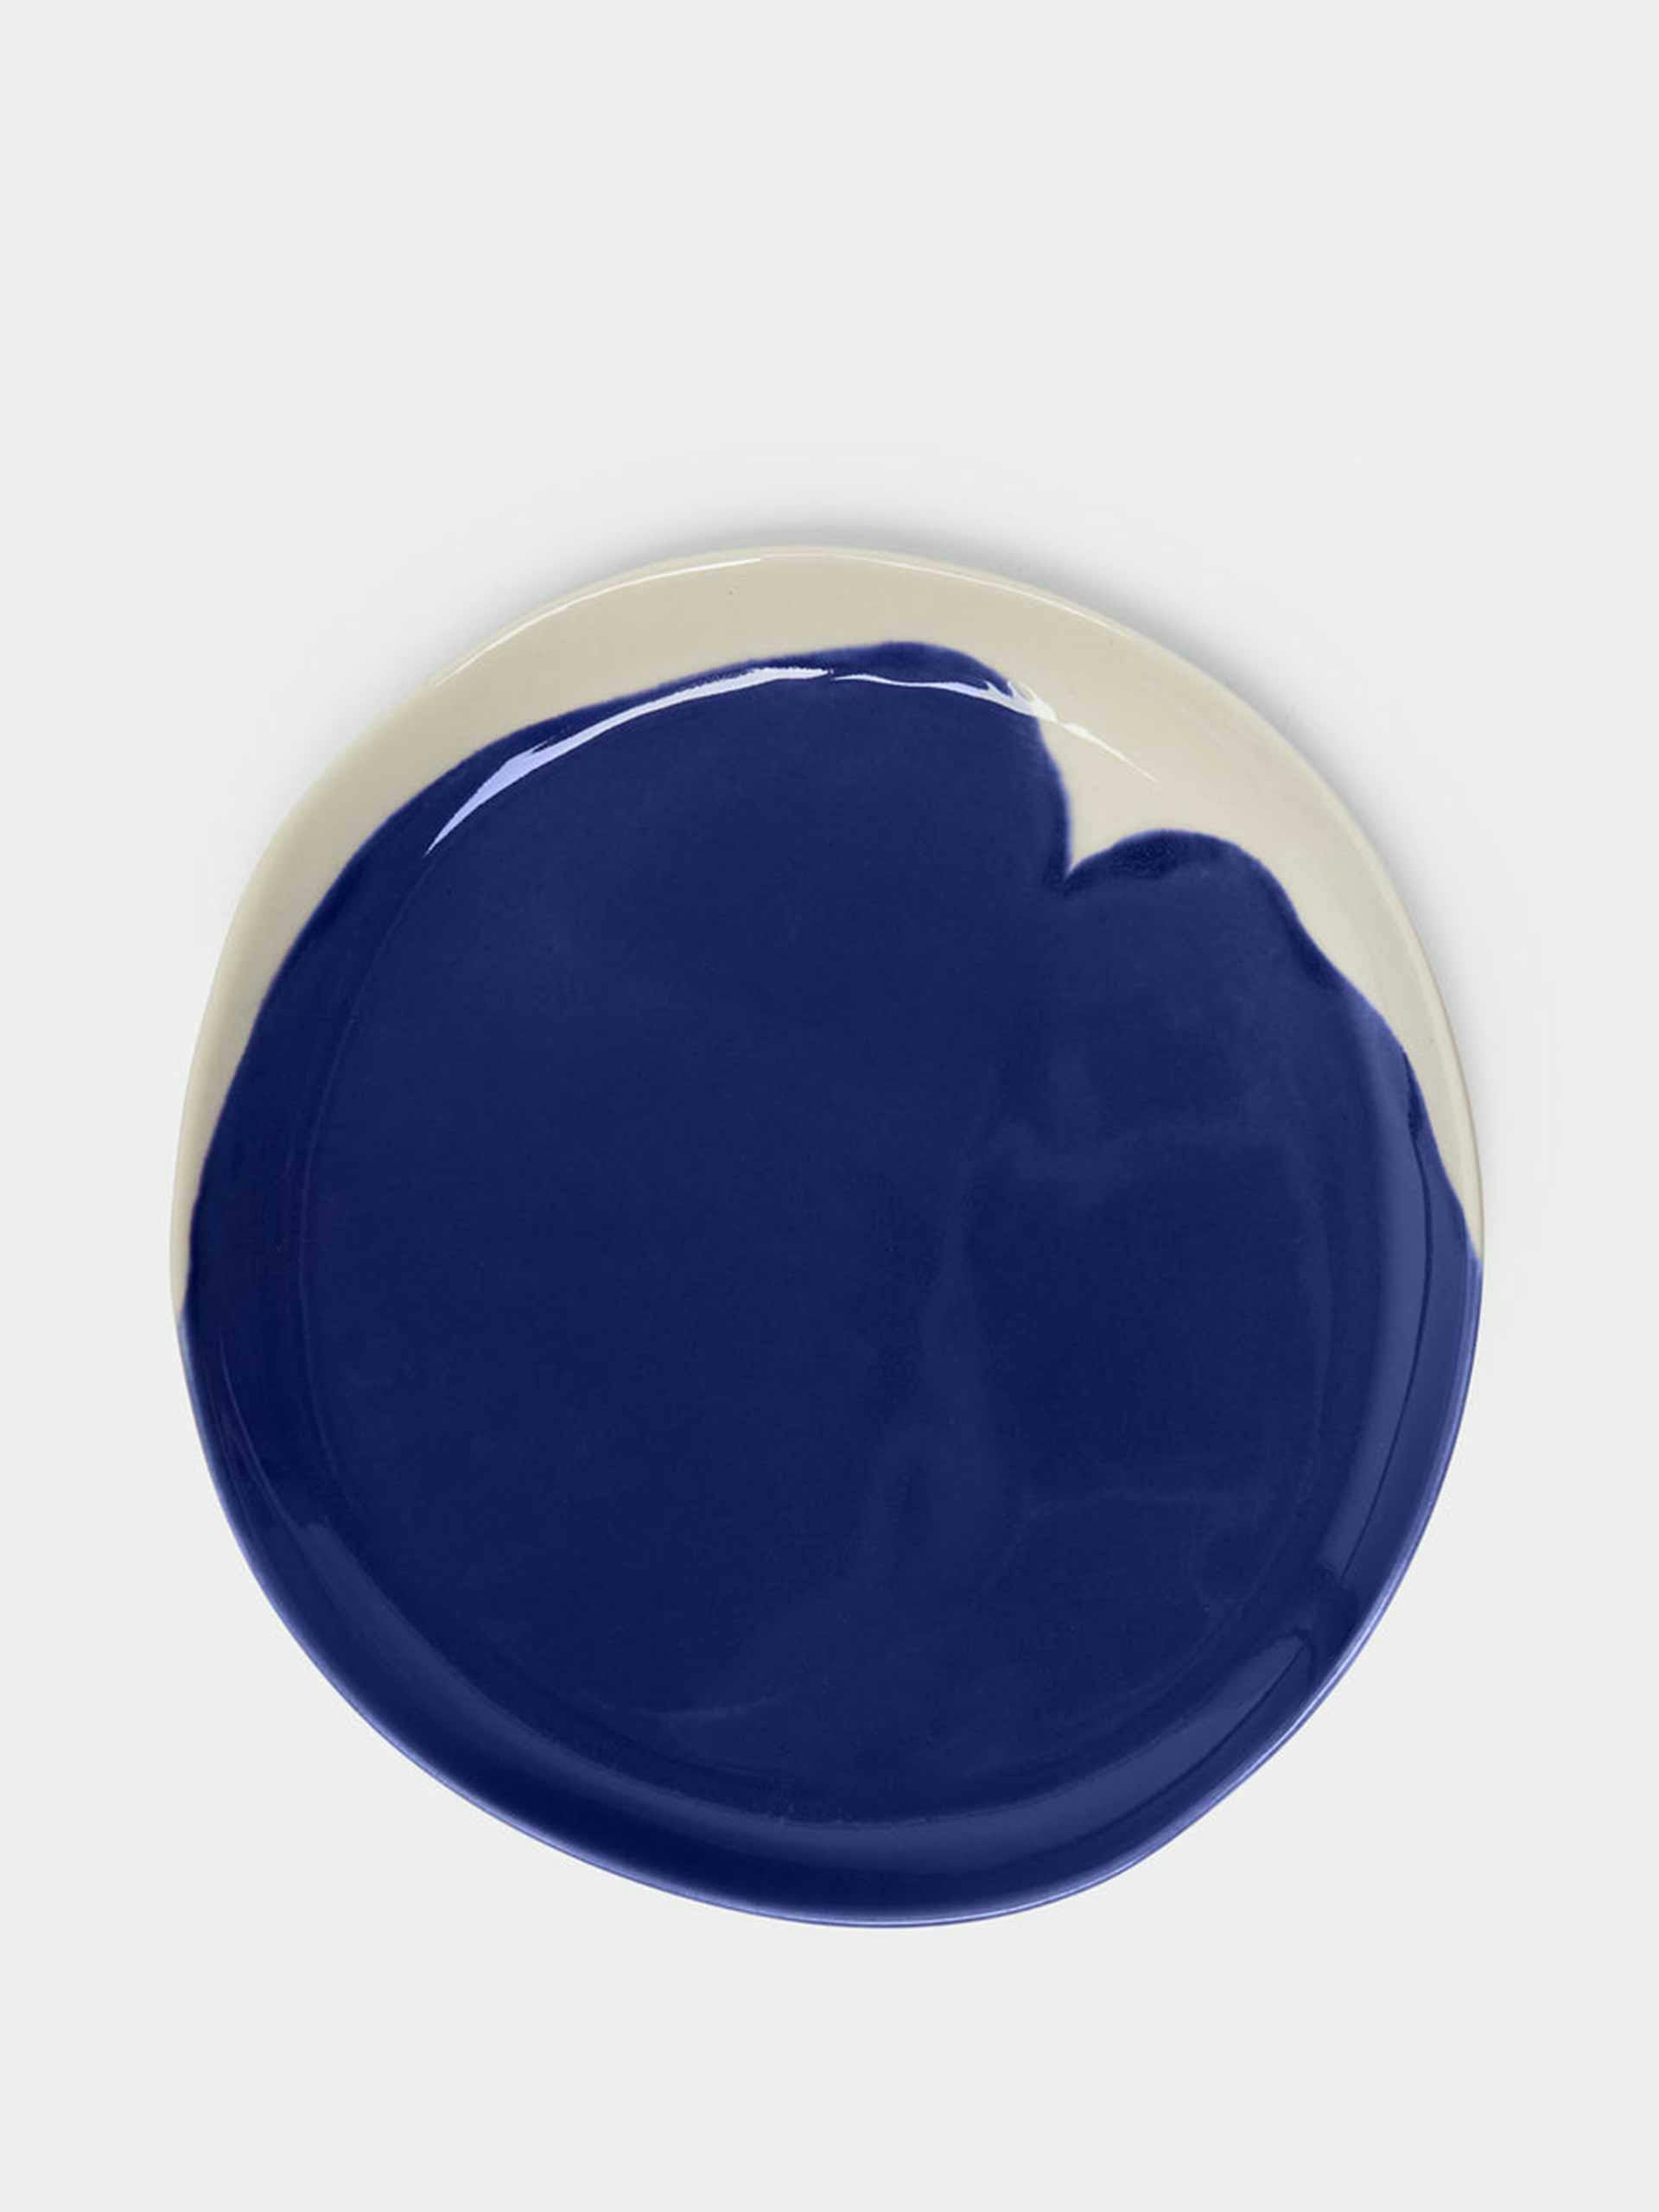 Hand-glazed porcelain side plates (set of 4)